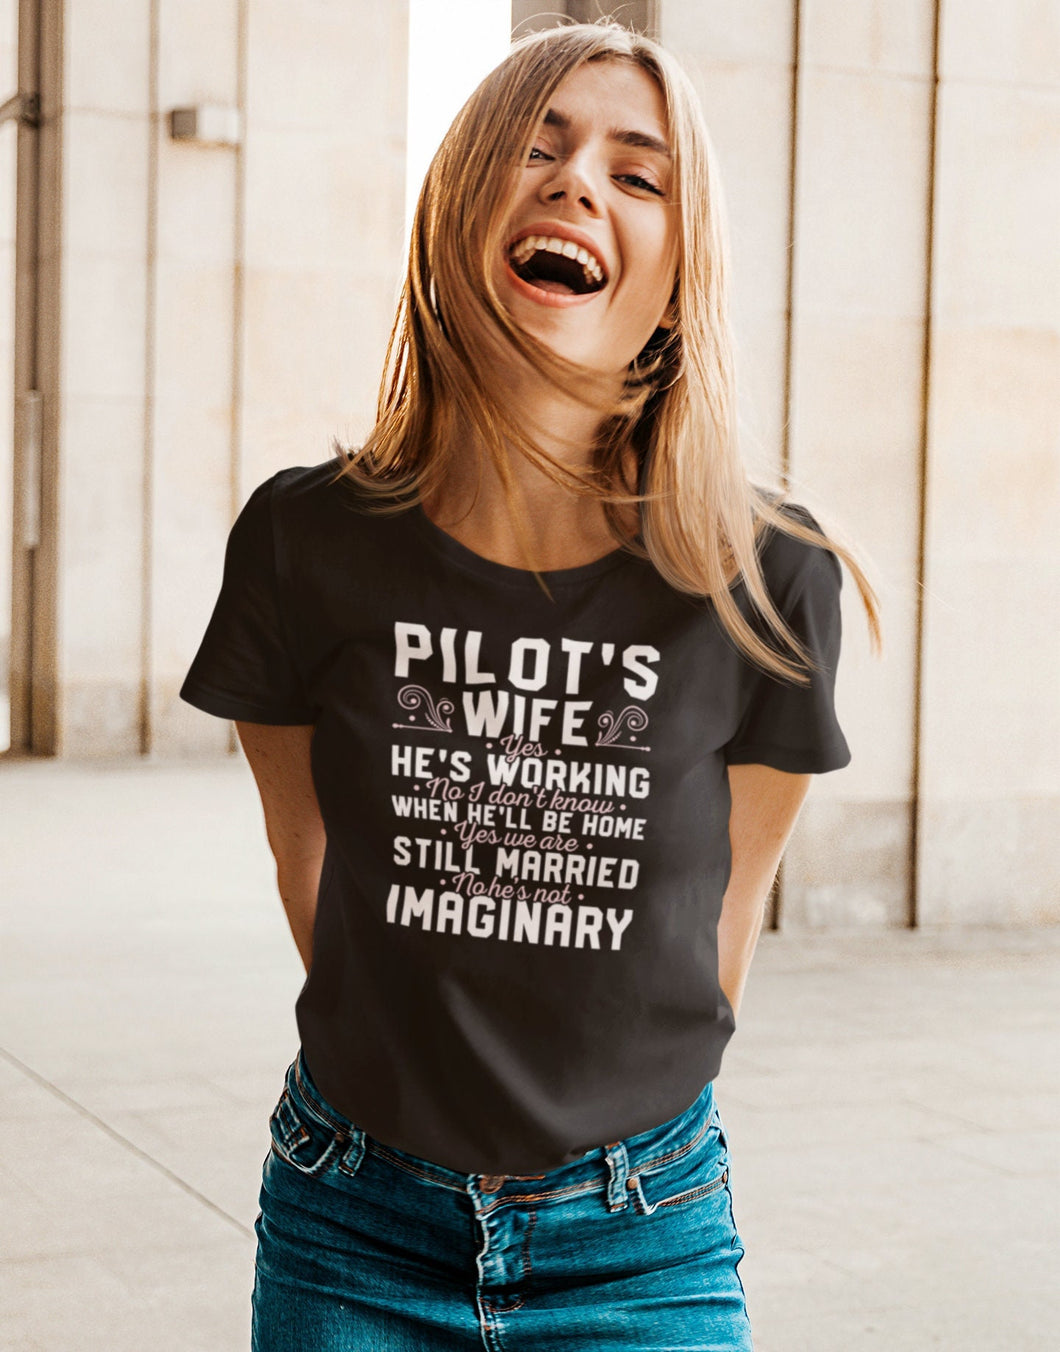 Pilot's Wife Yes He's Working Shirt, Pilot's Wife Shirt, Pilot Shirt, Job Helicopter Shirt